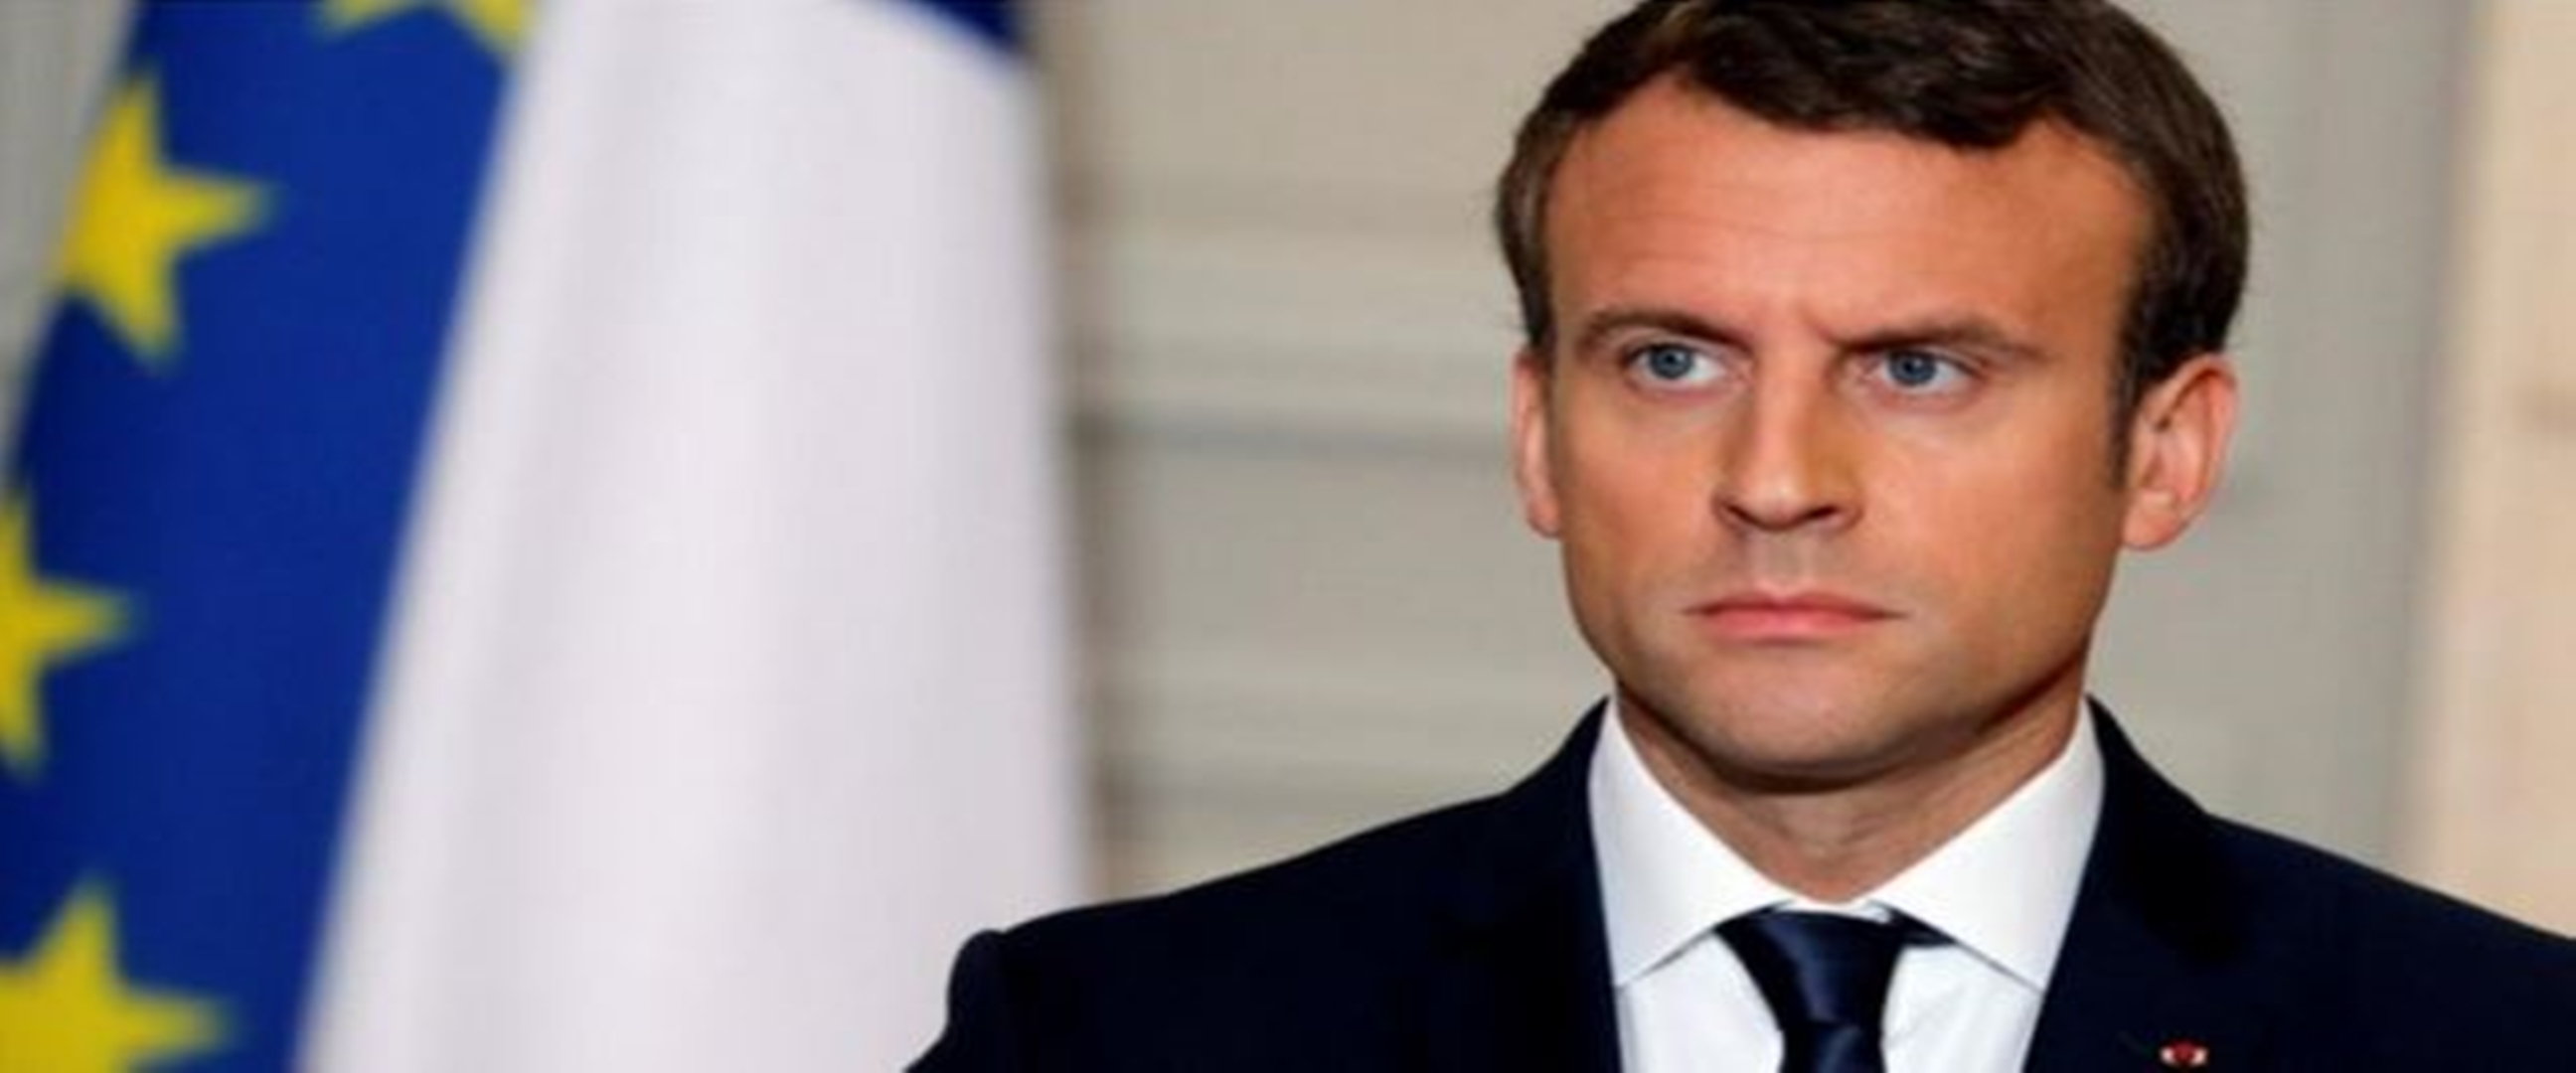 Prancis lockdown 15 hari, Presiden Macron: kita dalam kondisi perang